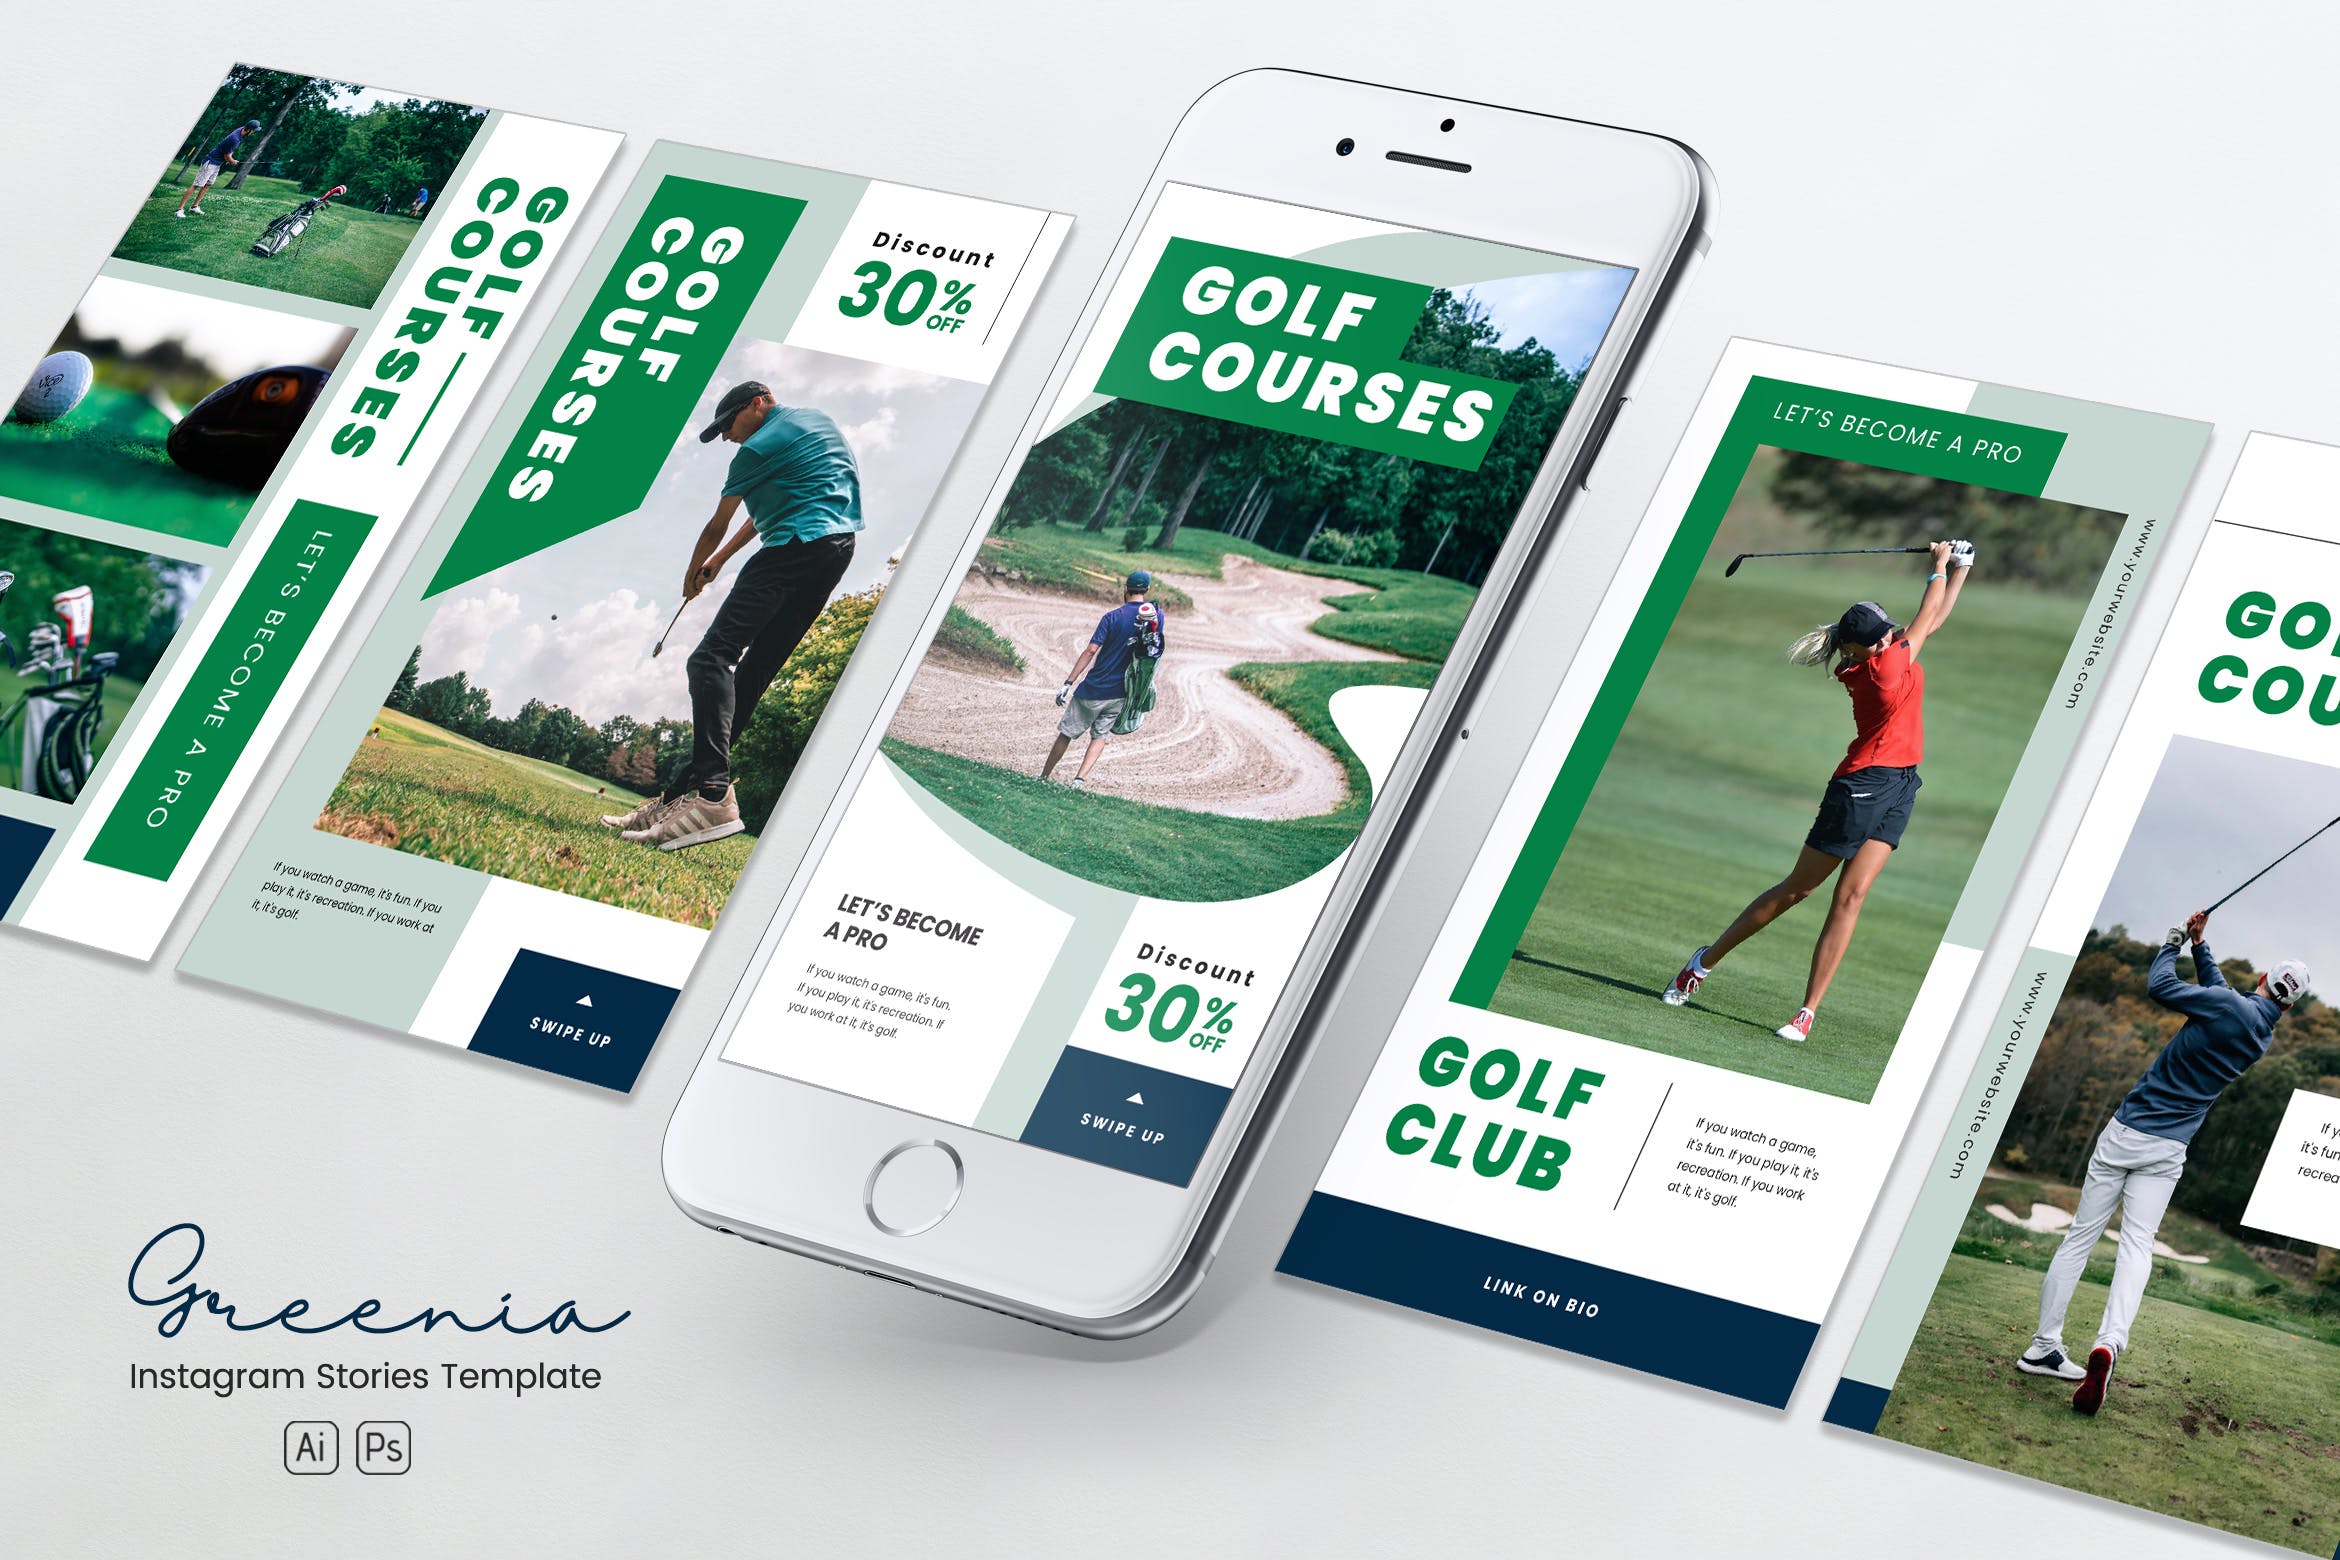 高尔夫球场/俱乐部Instagram社交媒体品牌故事推广PSD&AI模板16图库精选 Golf Competition Instagram Stories PSD & AI插图